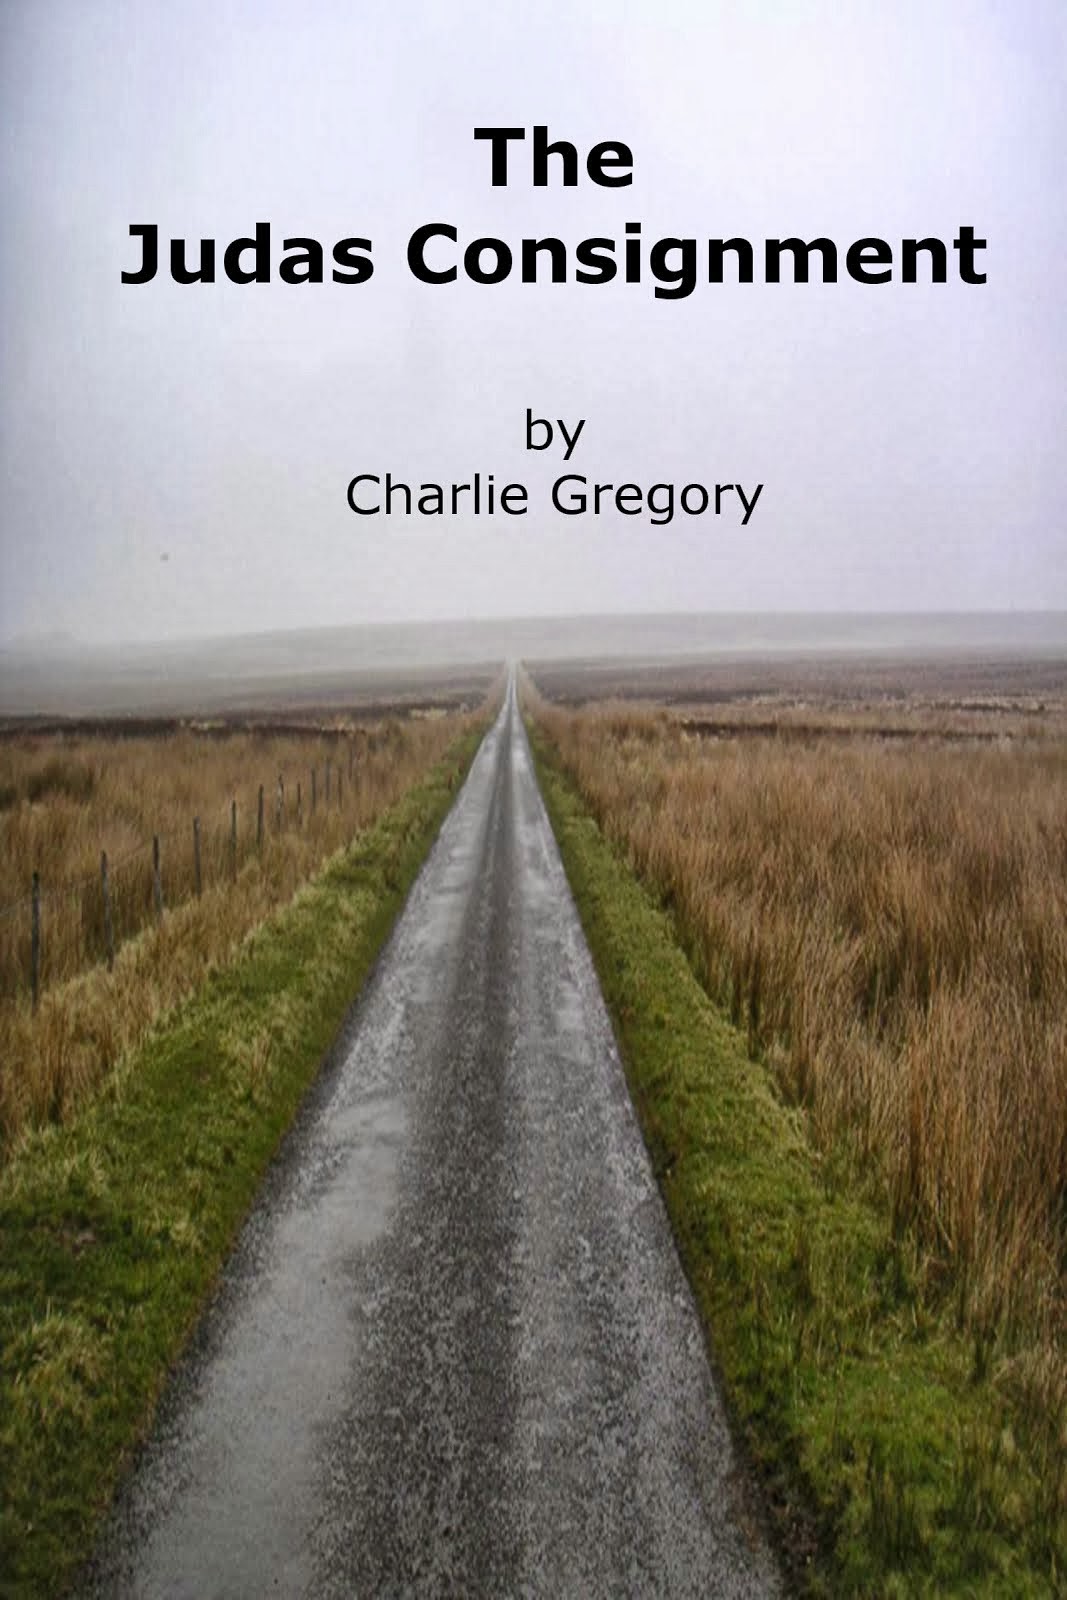 The Judas Consignment